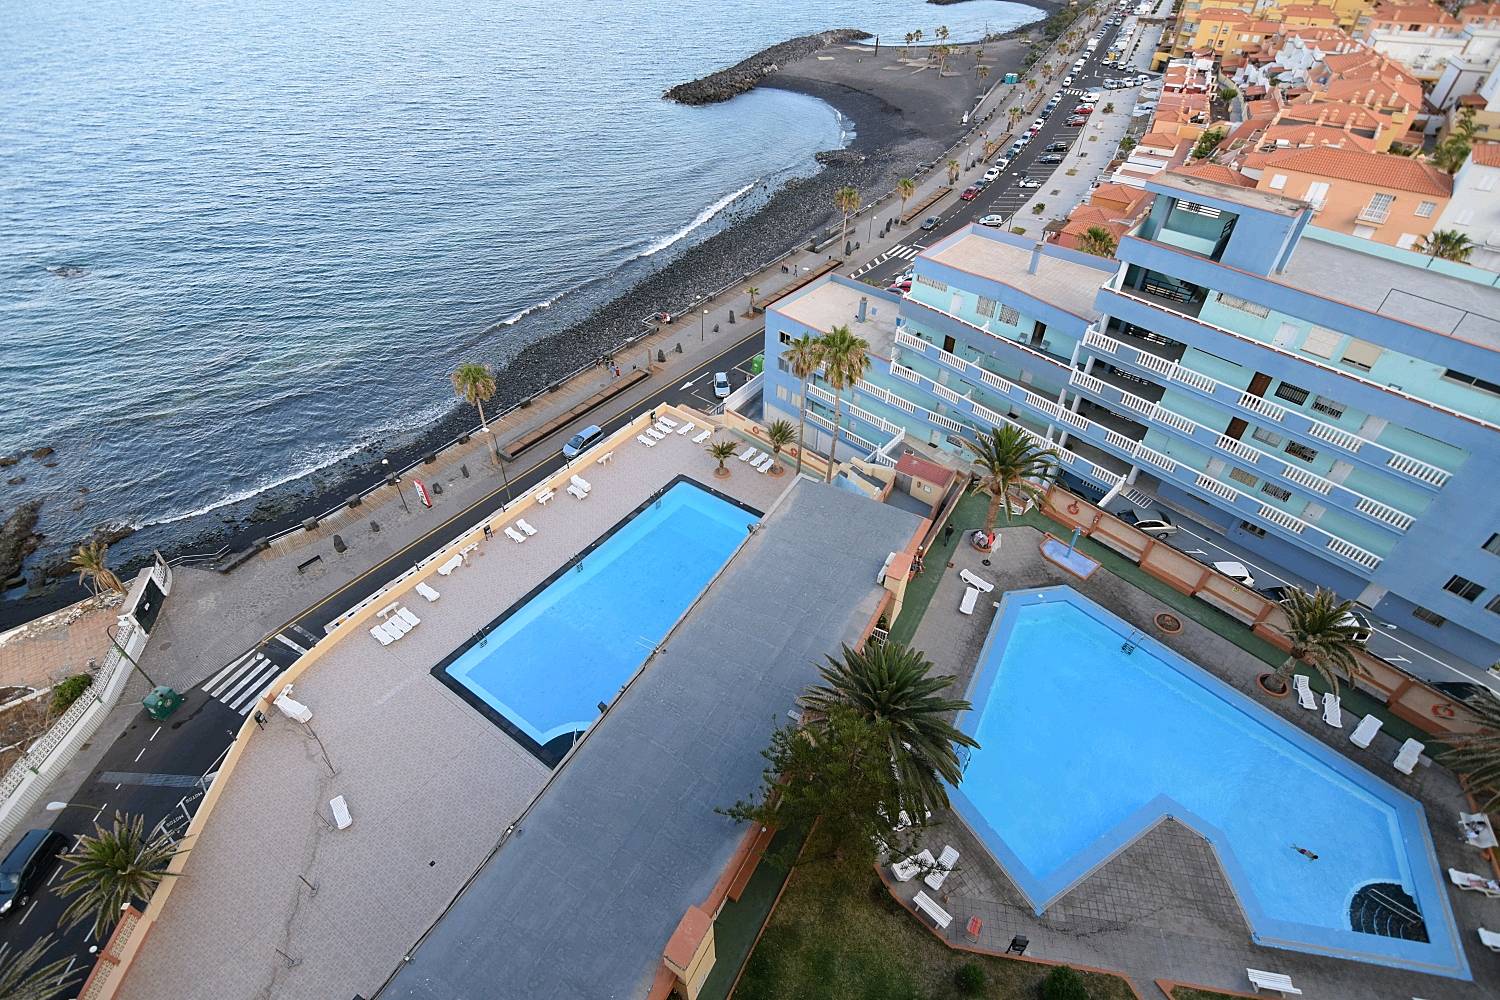 Alquiler apartamentos vacacionales en Candelaria - Tenerife y casas rurales